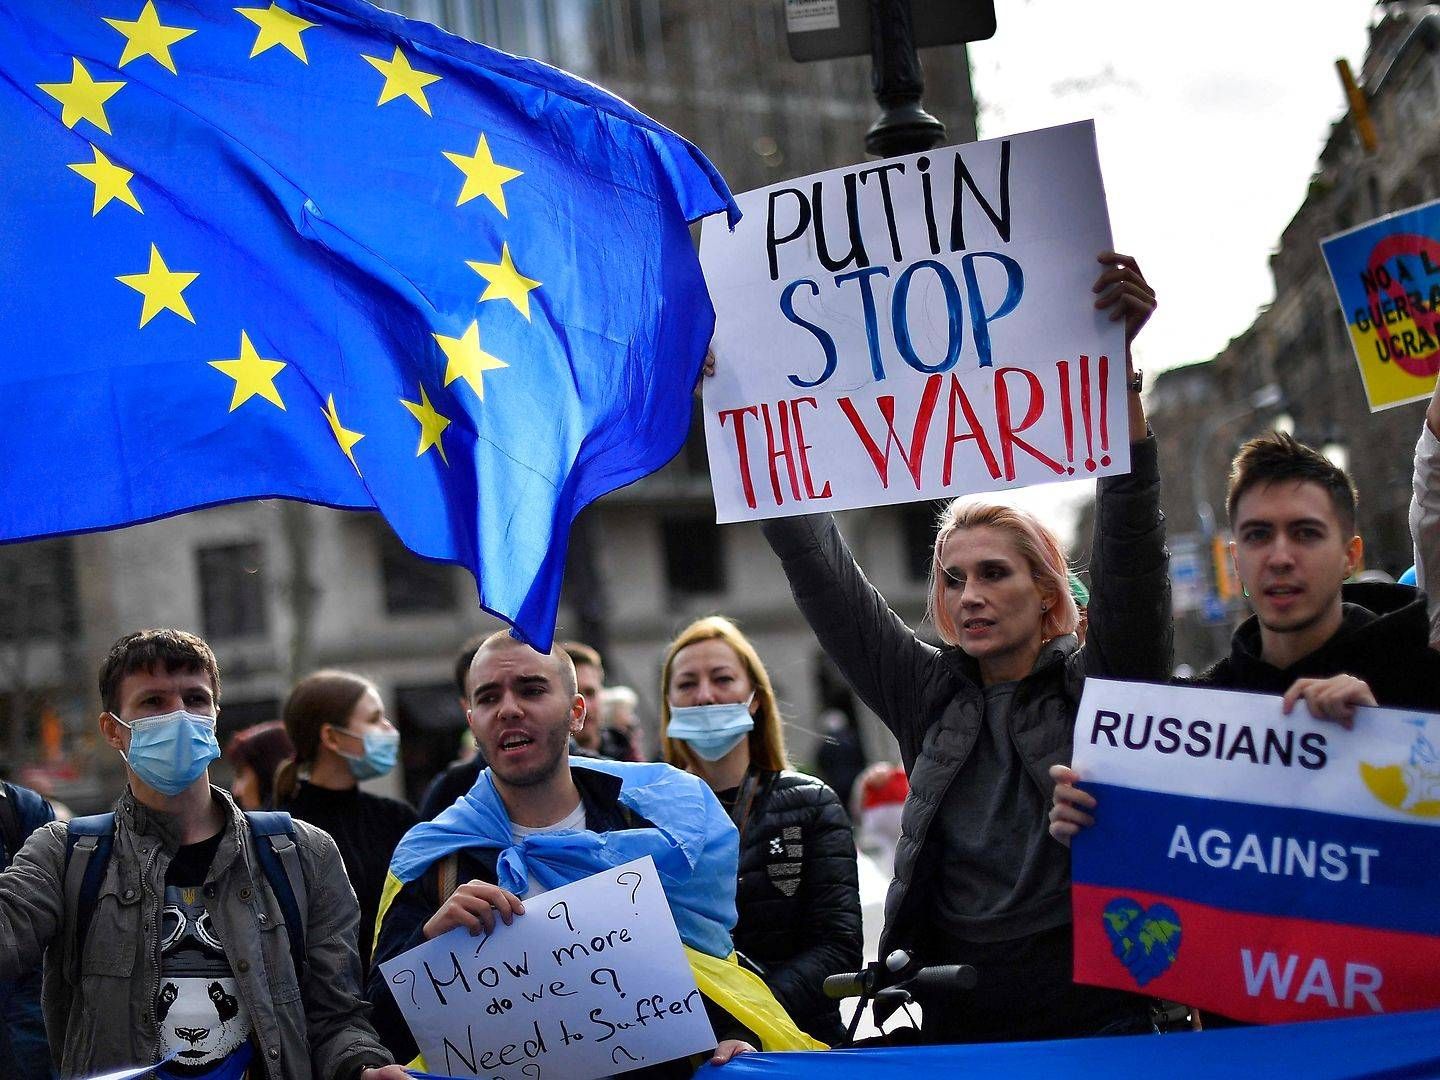 Flere byer verden over har vist sympati med Ukraine ved at demonstrere for fred. Her er flere stimlet sammen foran EU-kommissionens lokale kontor i Barcelona, Spanien. | Foto: Pau Barrena/AFP/Ritzau Scanpix